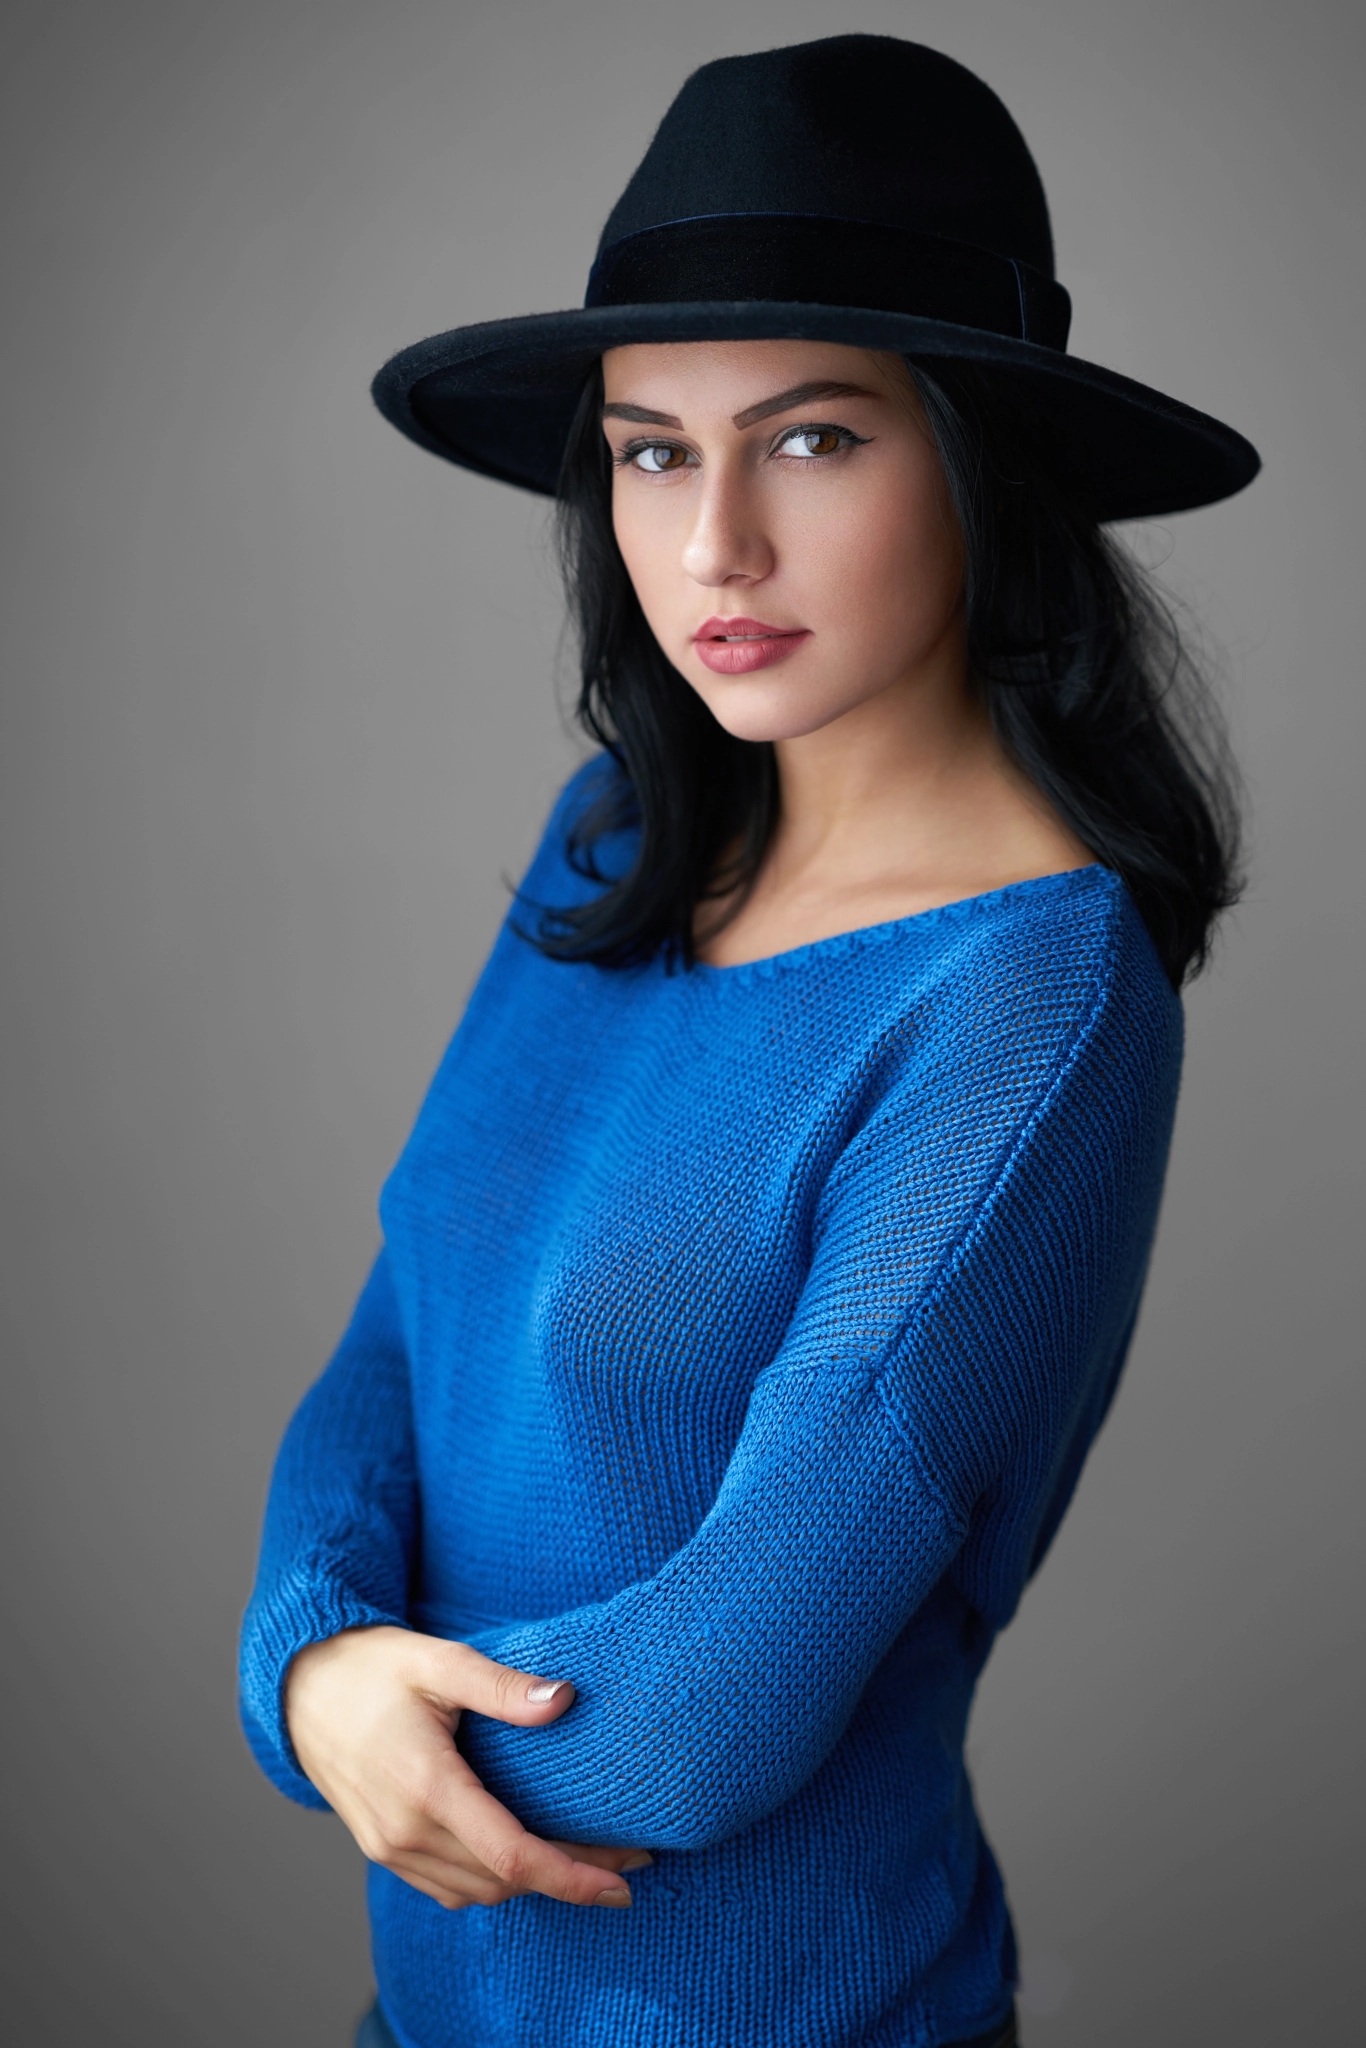 #sweater, #soňa Machyňáková, #portrait, #blue Sweater, - Photo Shoot , HD Wallpaper & Backgrounds